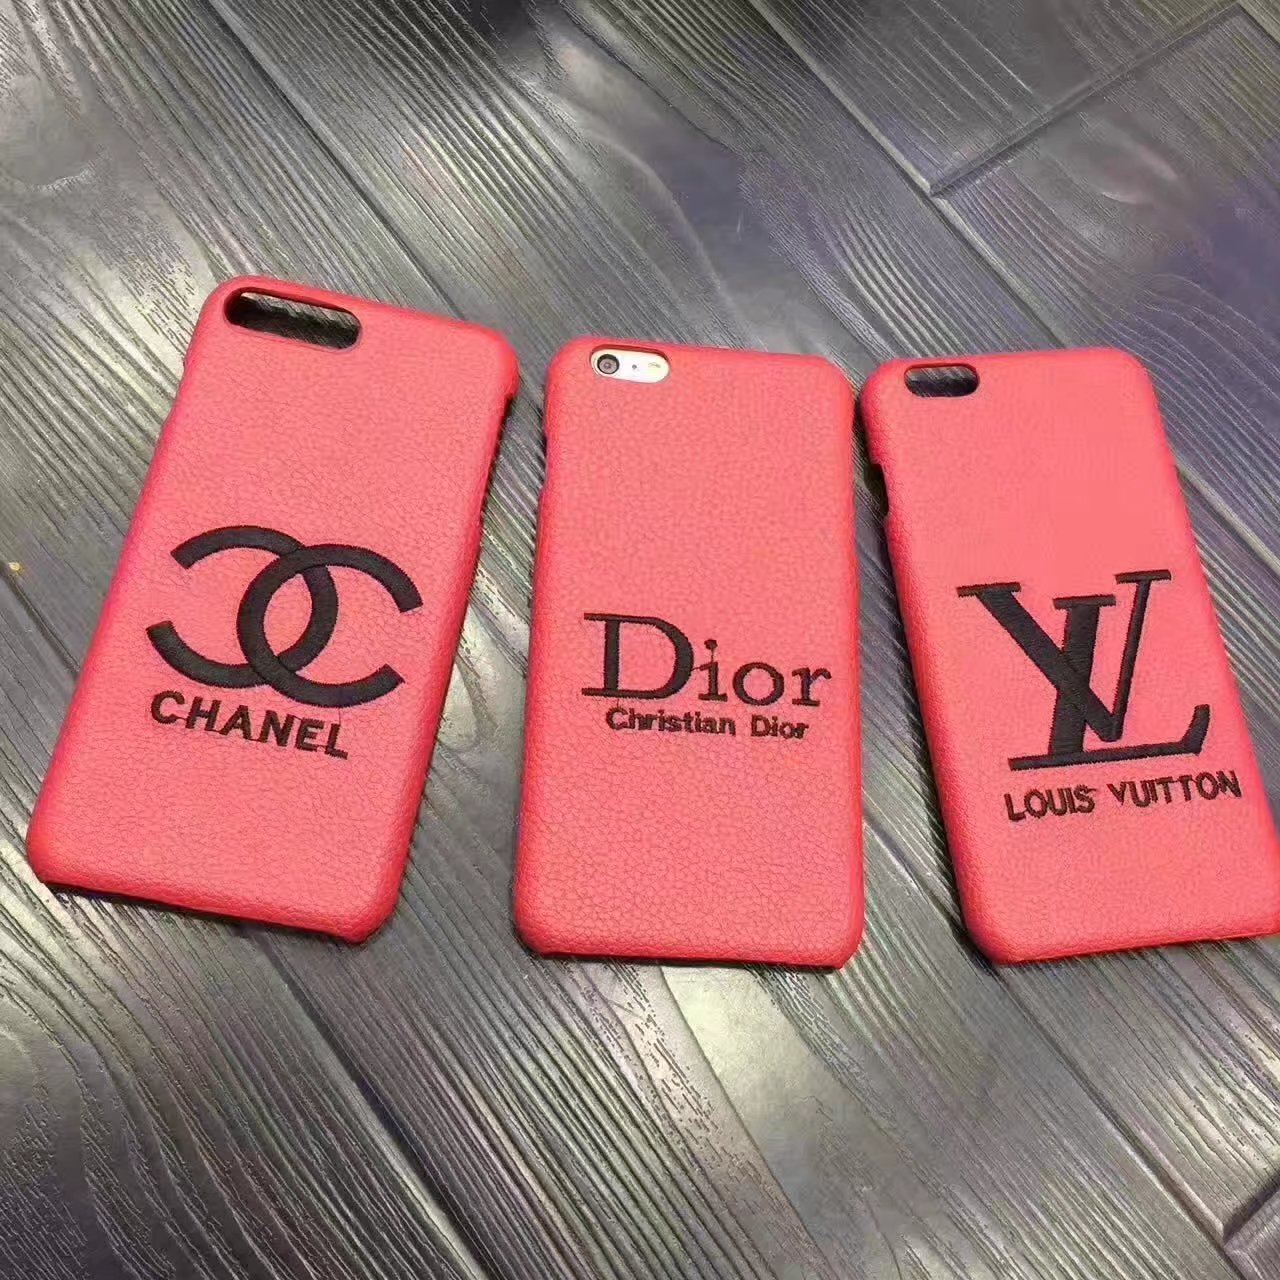 ディオール Dior アイフォンx ケース 赤 刺繍ロゴ ブランド Iphone8 Plus ケース おしゃれ 女性 楽しさを隠されたの日常生活